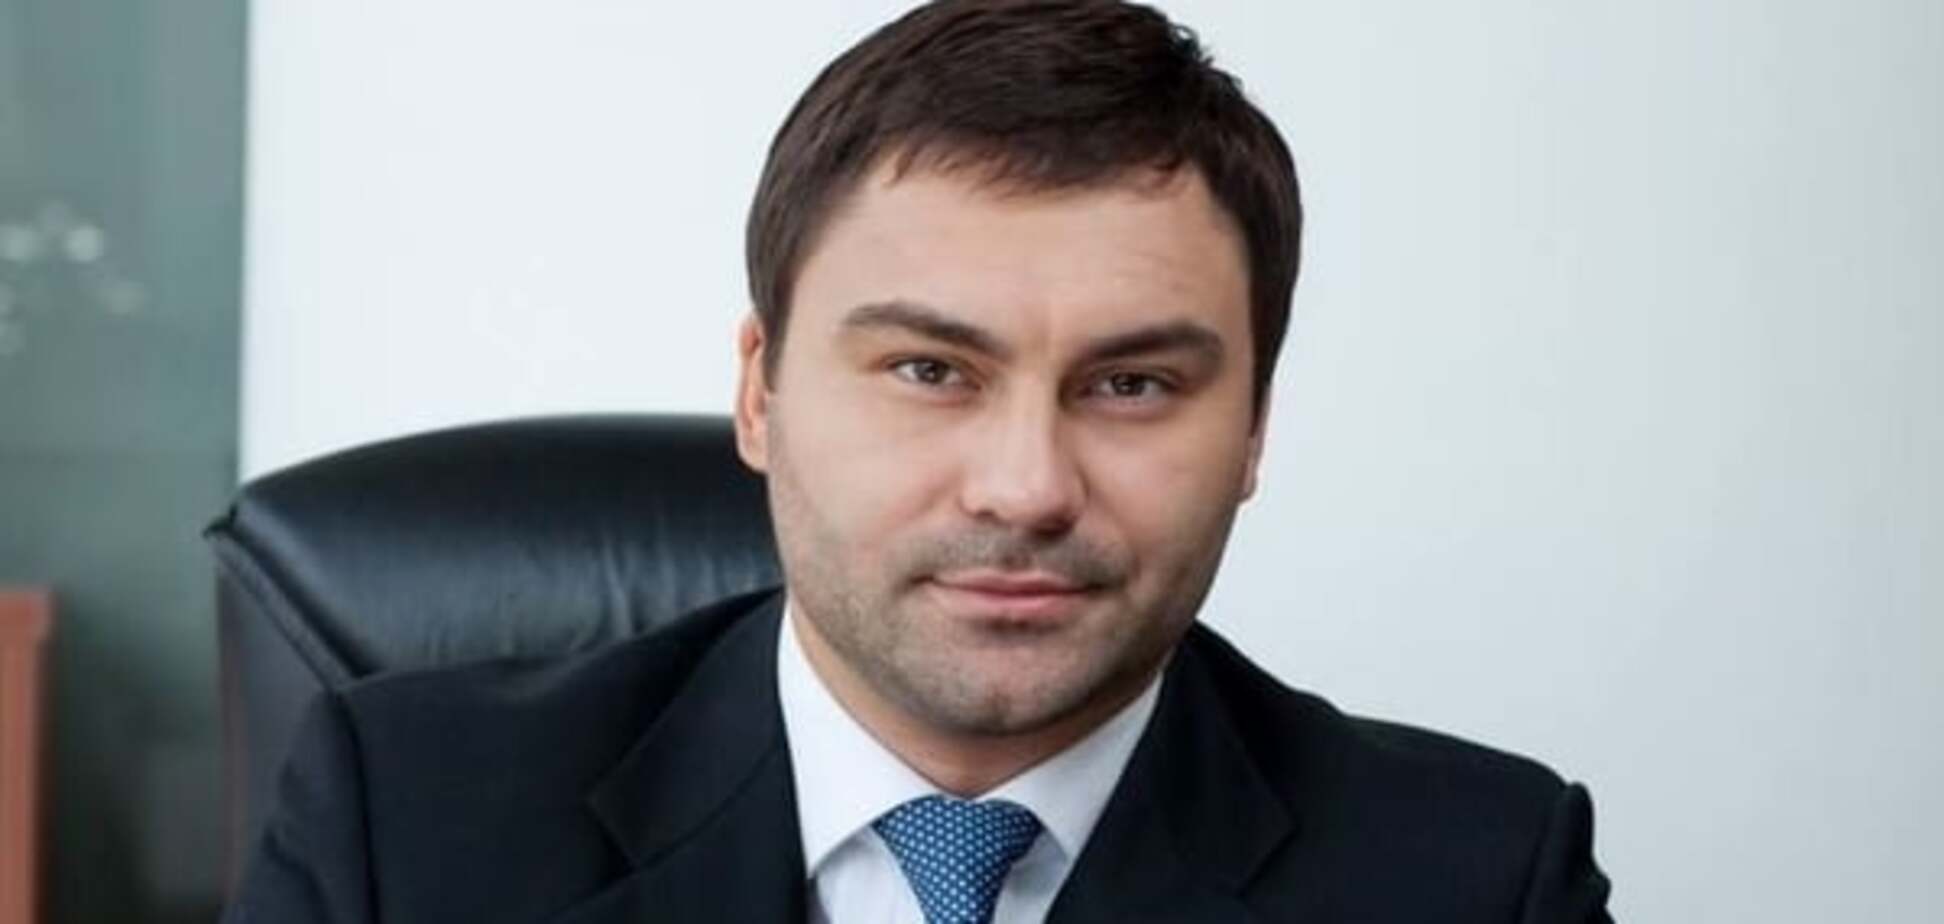 Іванюк відкликав свою кандидатуру на посаду директора ДП 'Укрспирт'